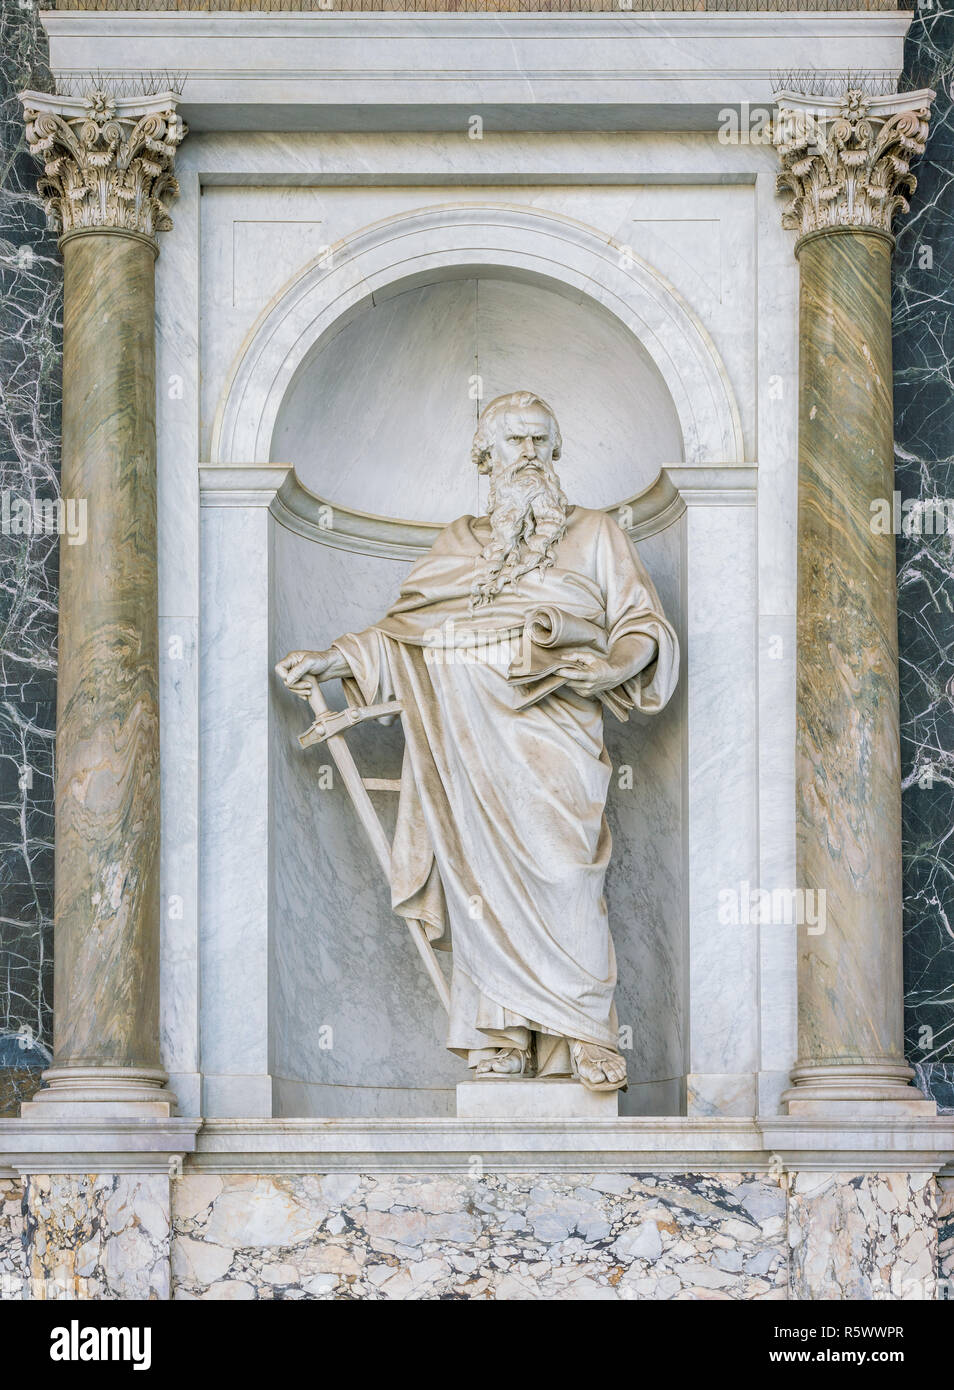 San Paolo statua nel portico della Basilica di San Paolo fuori le mura. Roma, Italia. Foto Stock